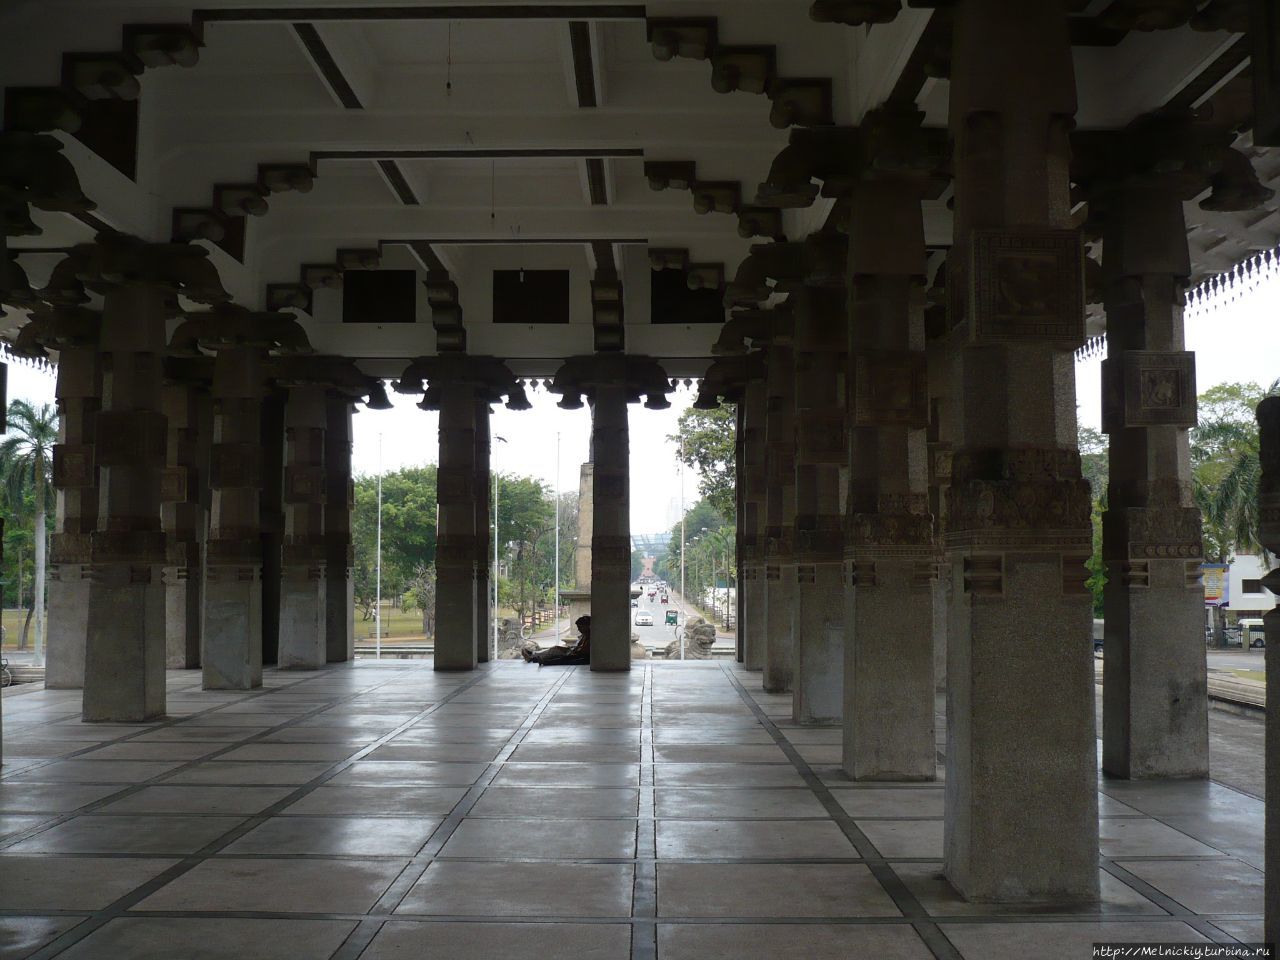 Мемориальный зал Независимости Коломбо, Шри-Ланка